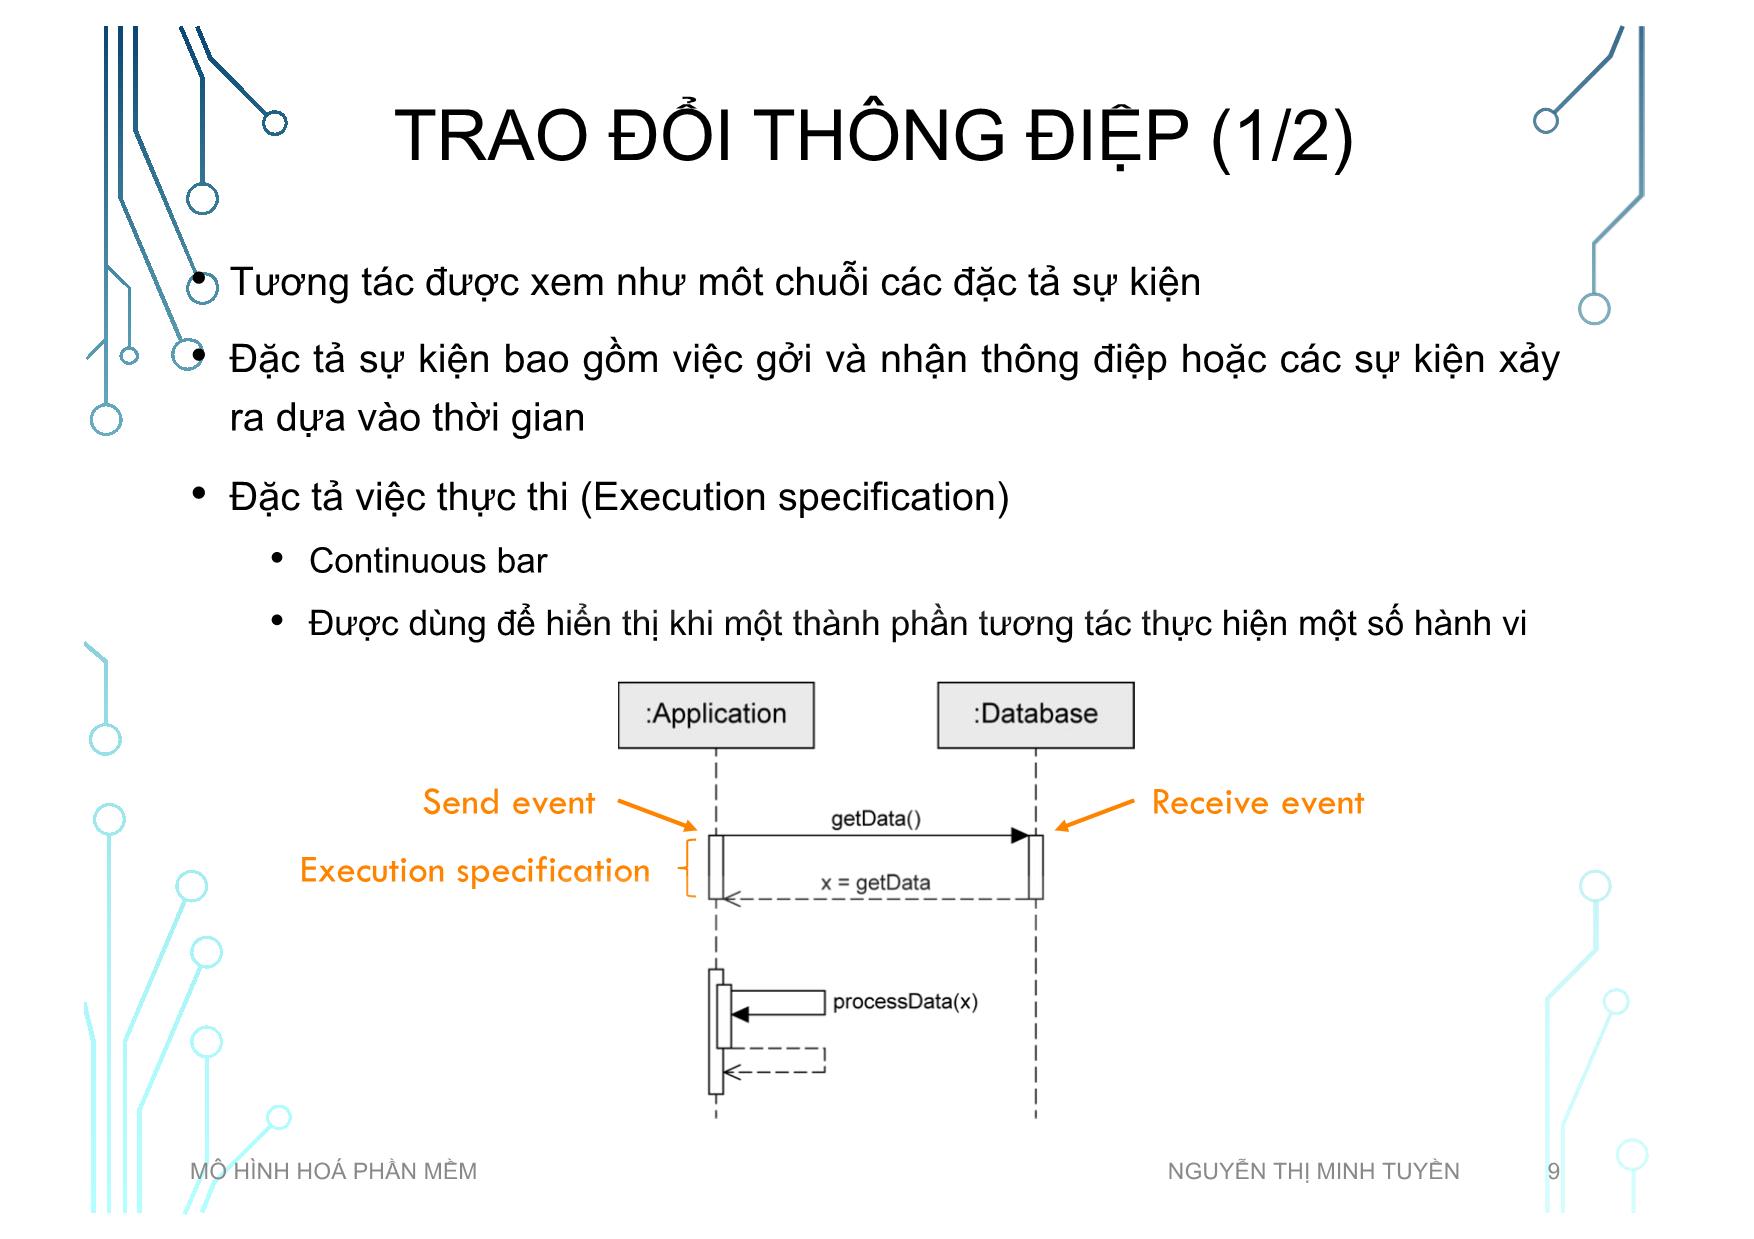 Bài giảng Mô hình hoá phần mềm - Tuần 5: Sequence diagram - Nguyễn Thị Minh Tuyền trang 9